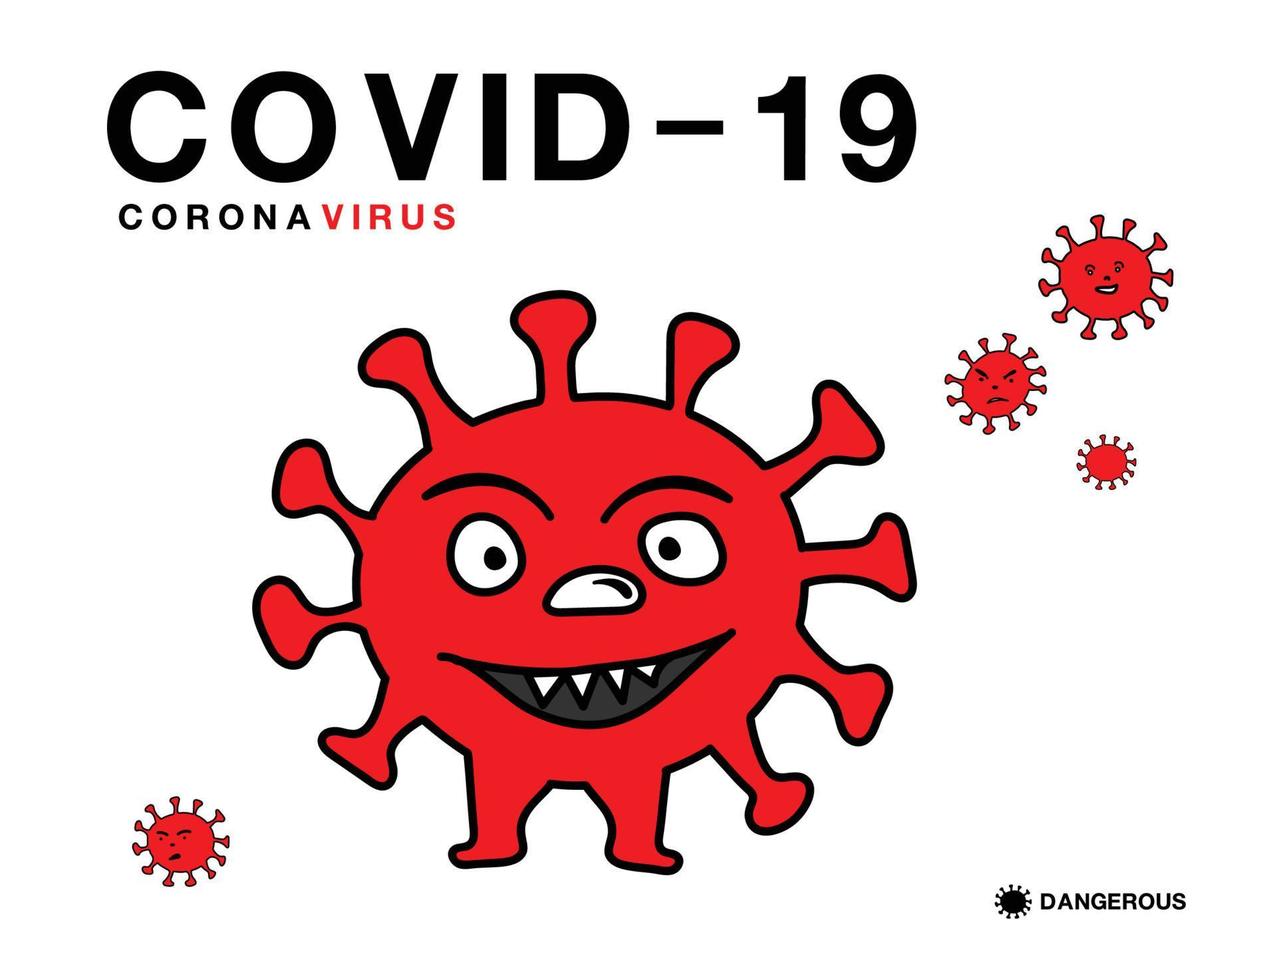 malattia di coronavirus covid-19 vettore illustraton, segno, logo, cartone animato, simbolo, icona medica